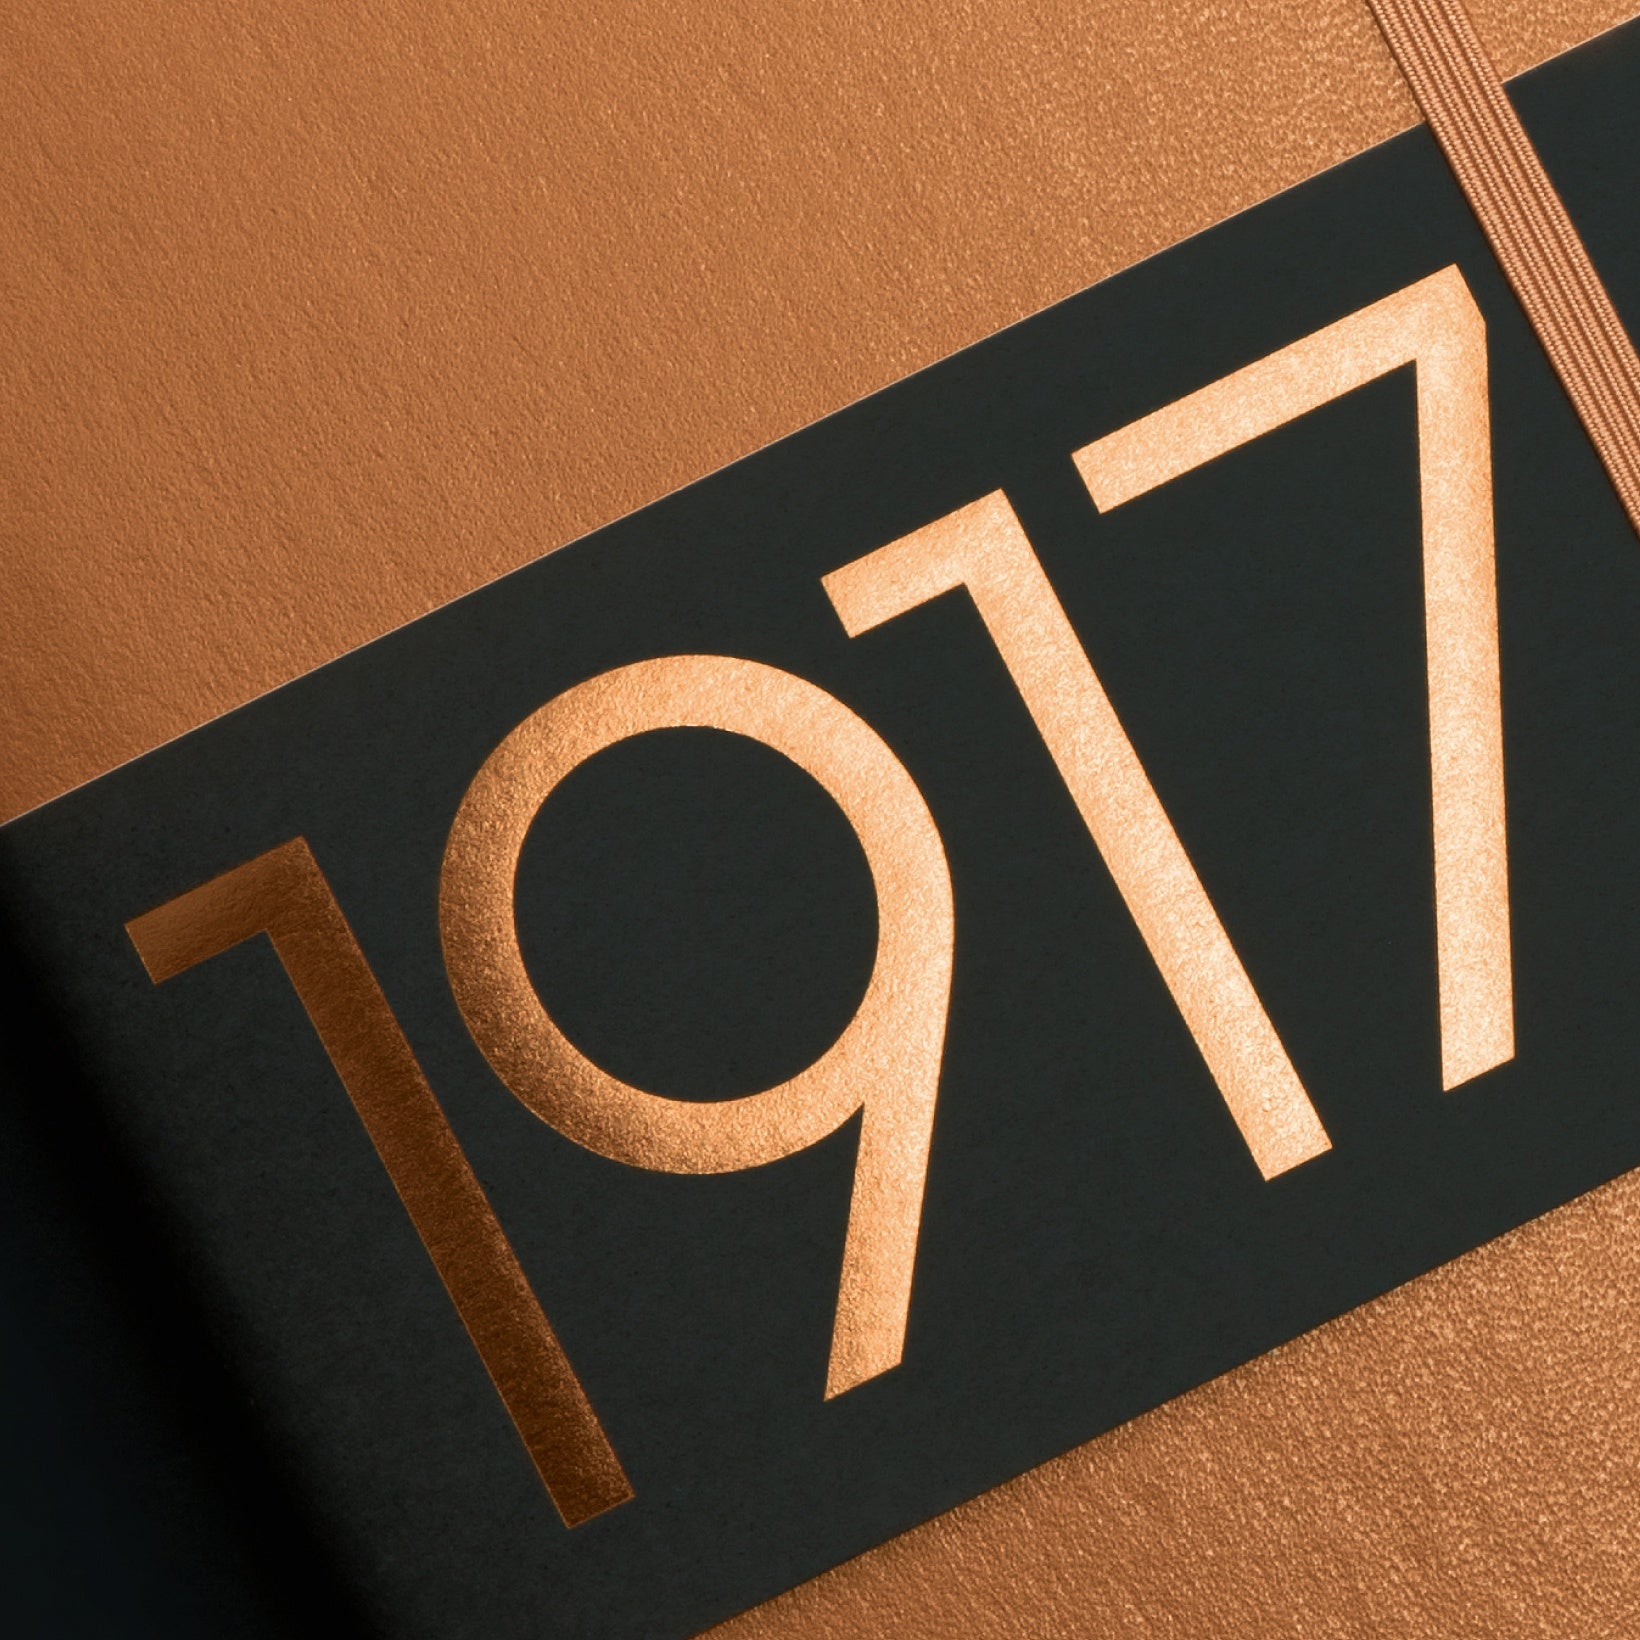 Notebook Review: Leuchtturm1917 Hardcover A5, Metallic Edition